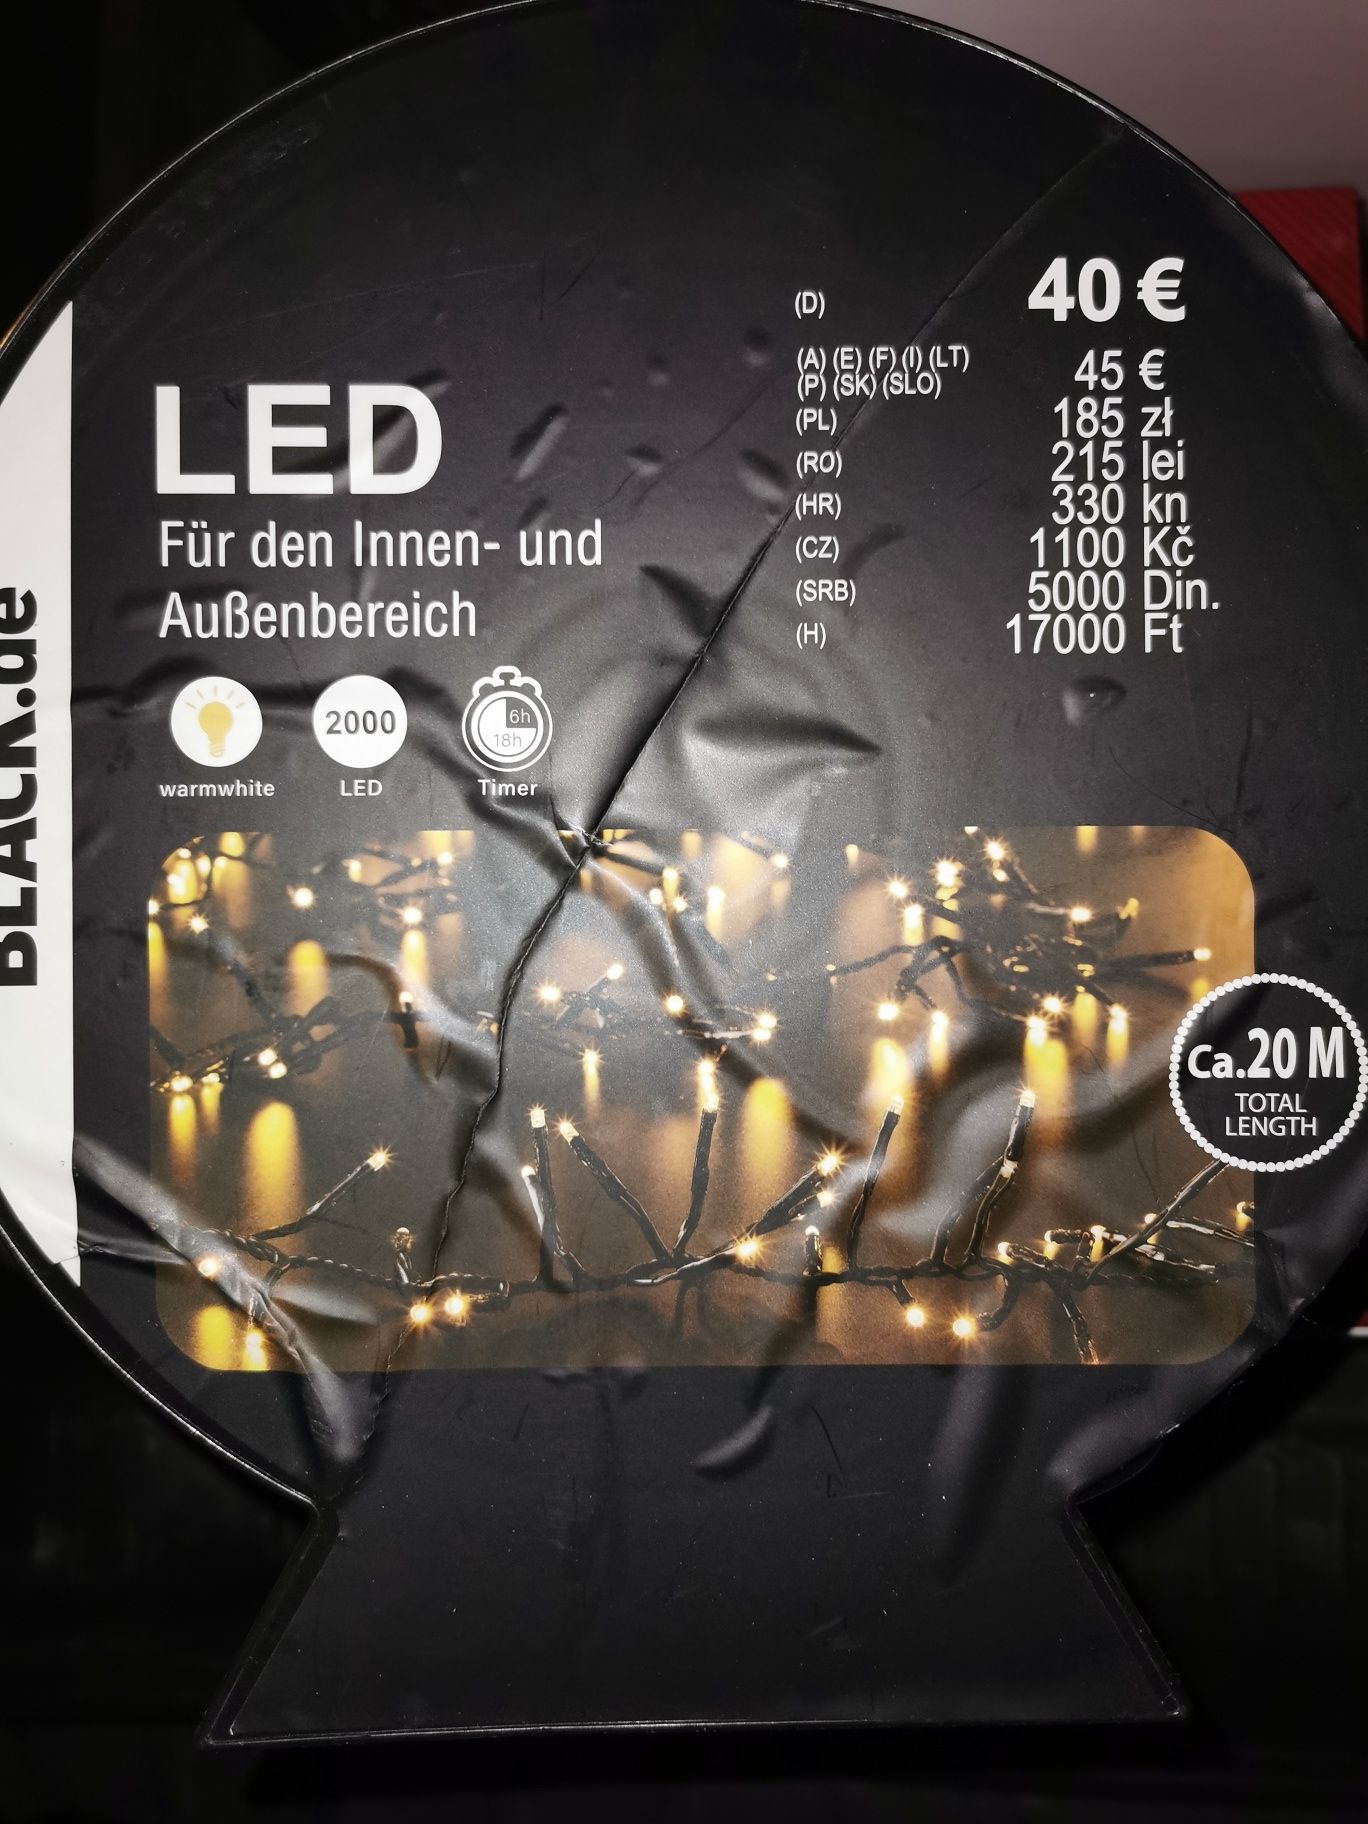 Lampki LED 2000 szt. Na zewnatrz